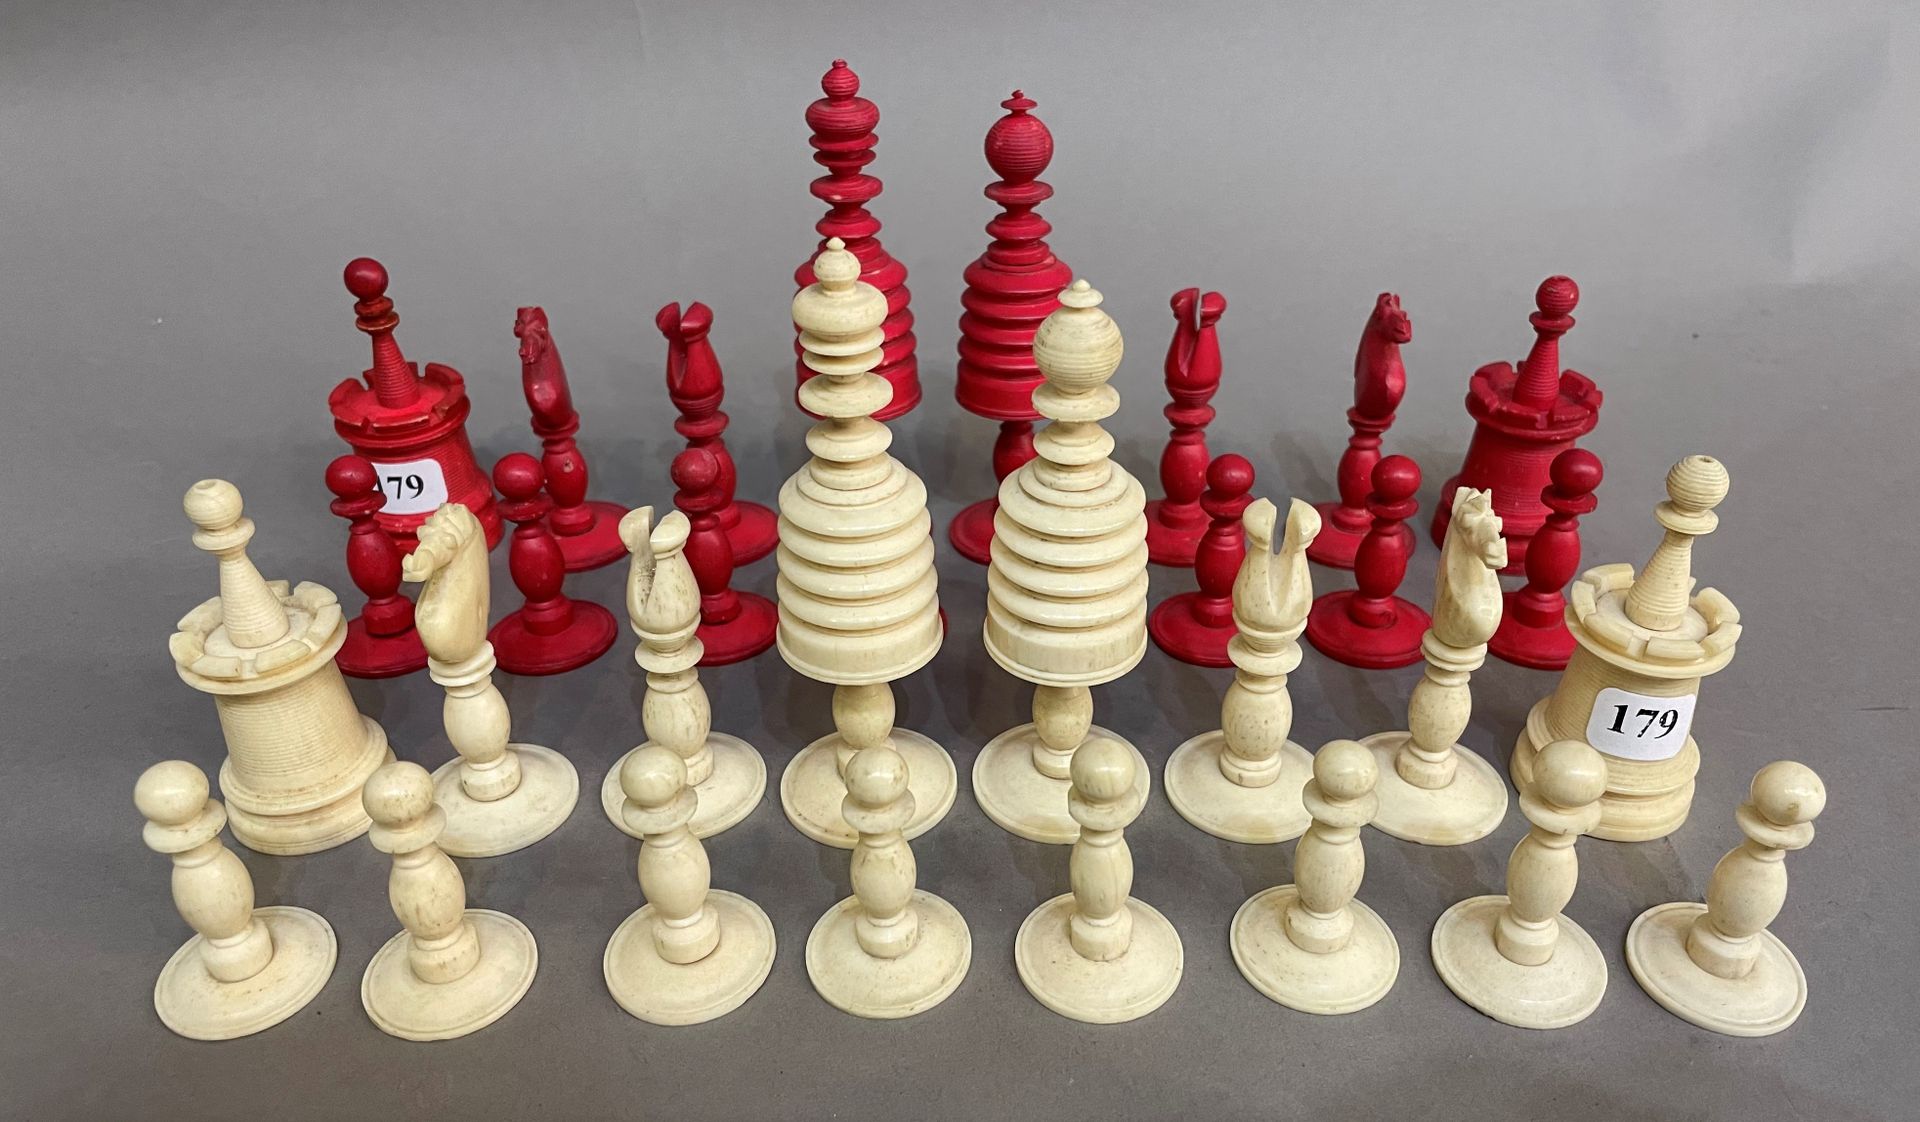 Null Jeu d’échecs en os sculpté complet

XIX°

H. Tour 7 cm

H. Roi 9,5 cm